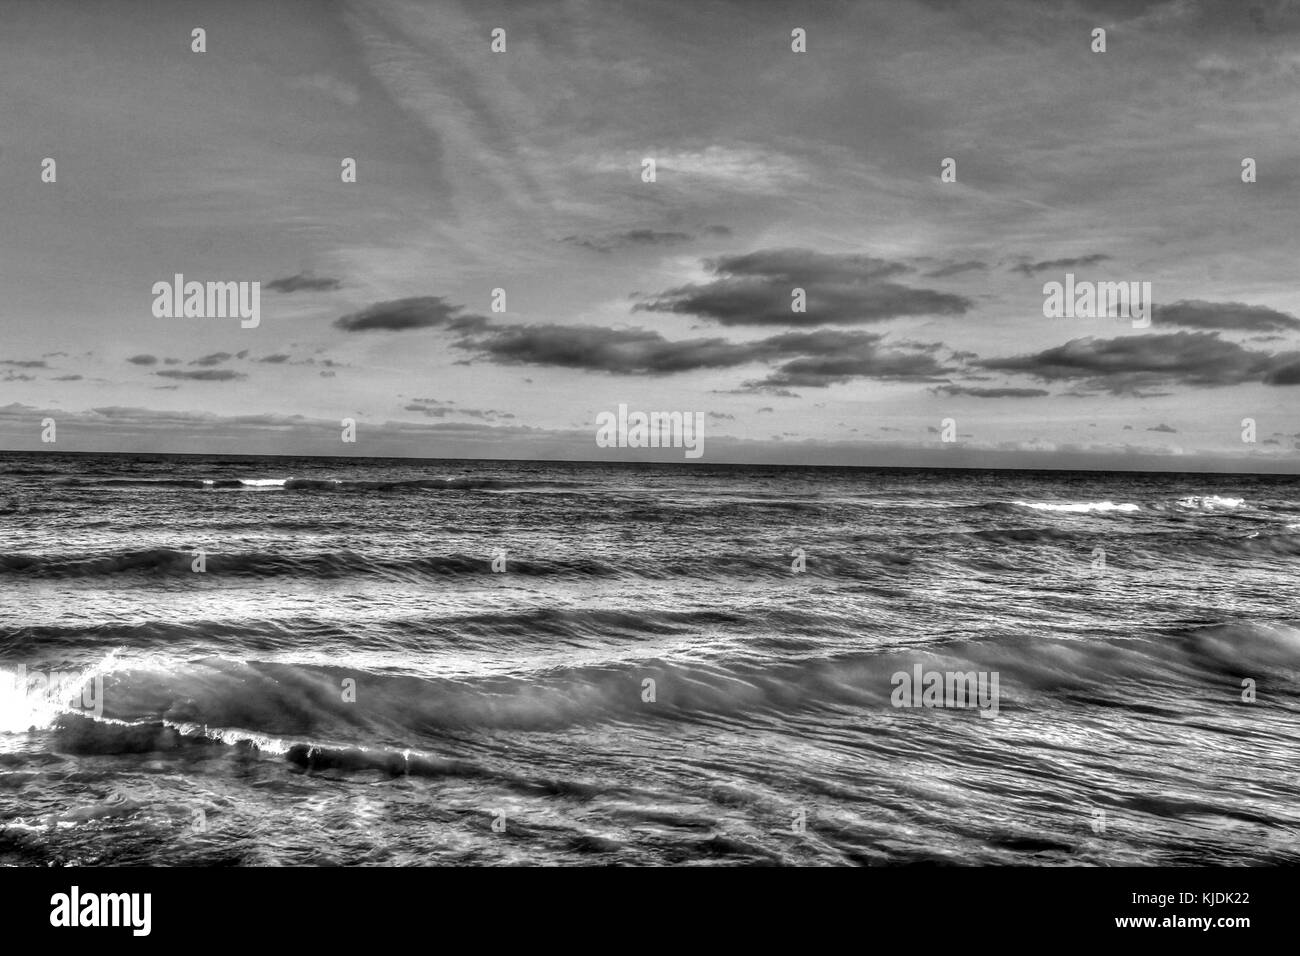 Gfp illinois beach state park monochrome picture lake michigan Stock Photo